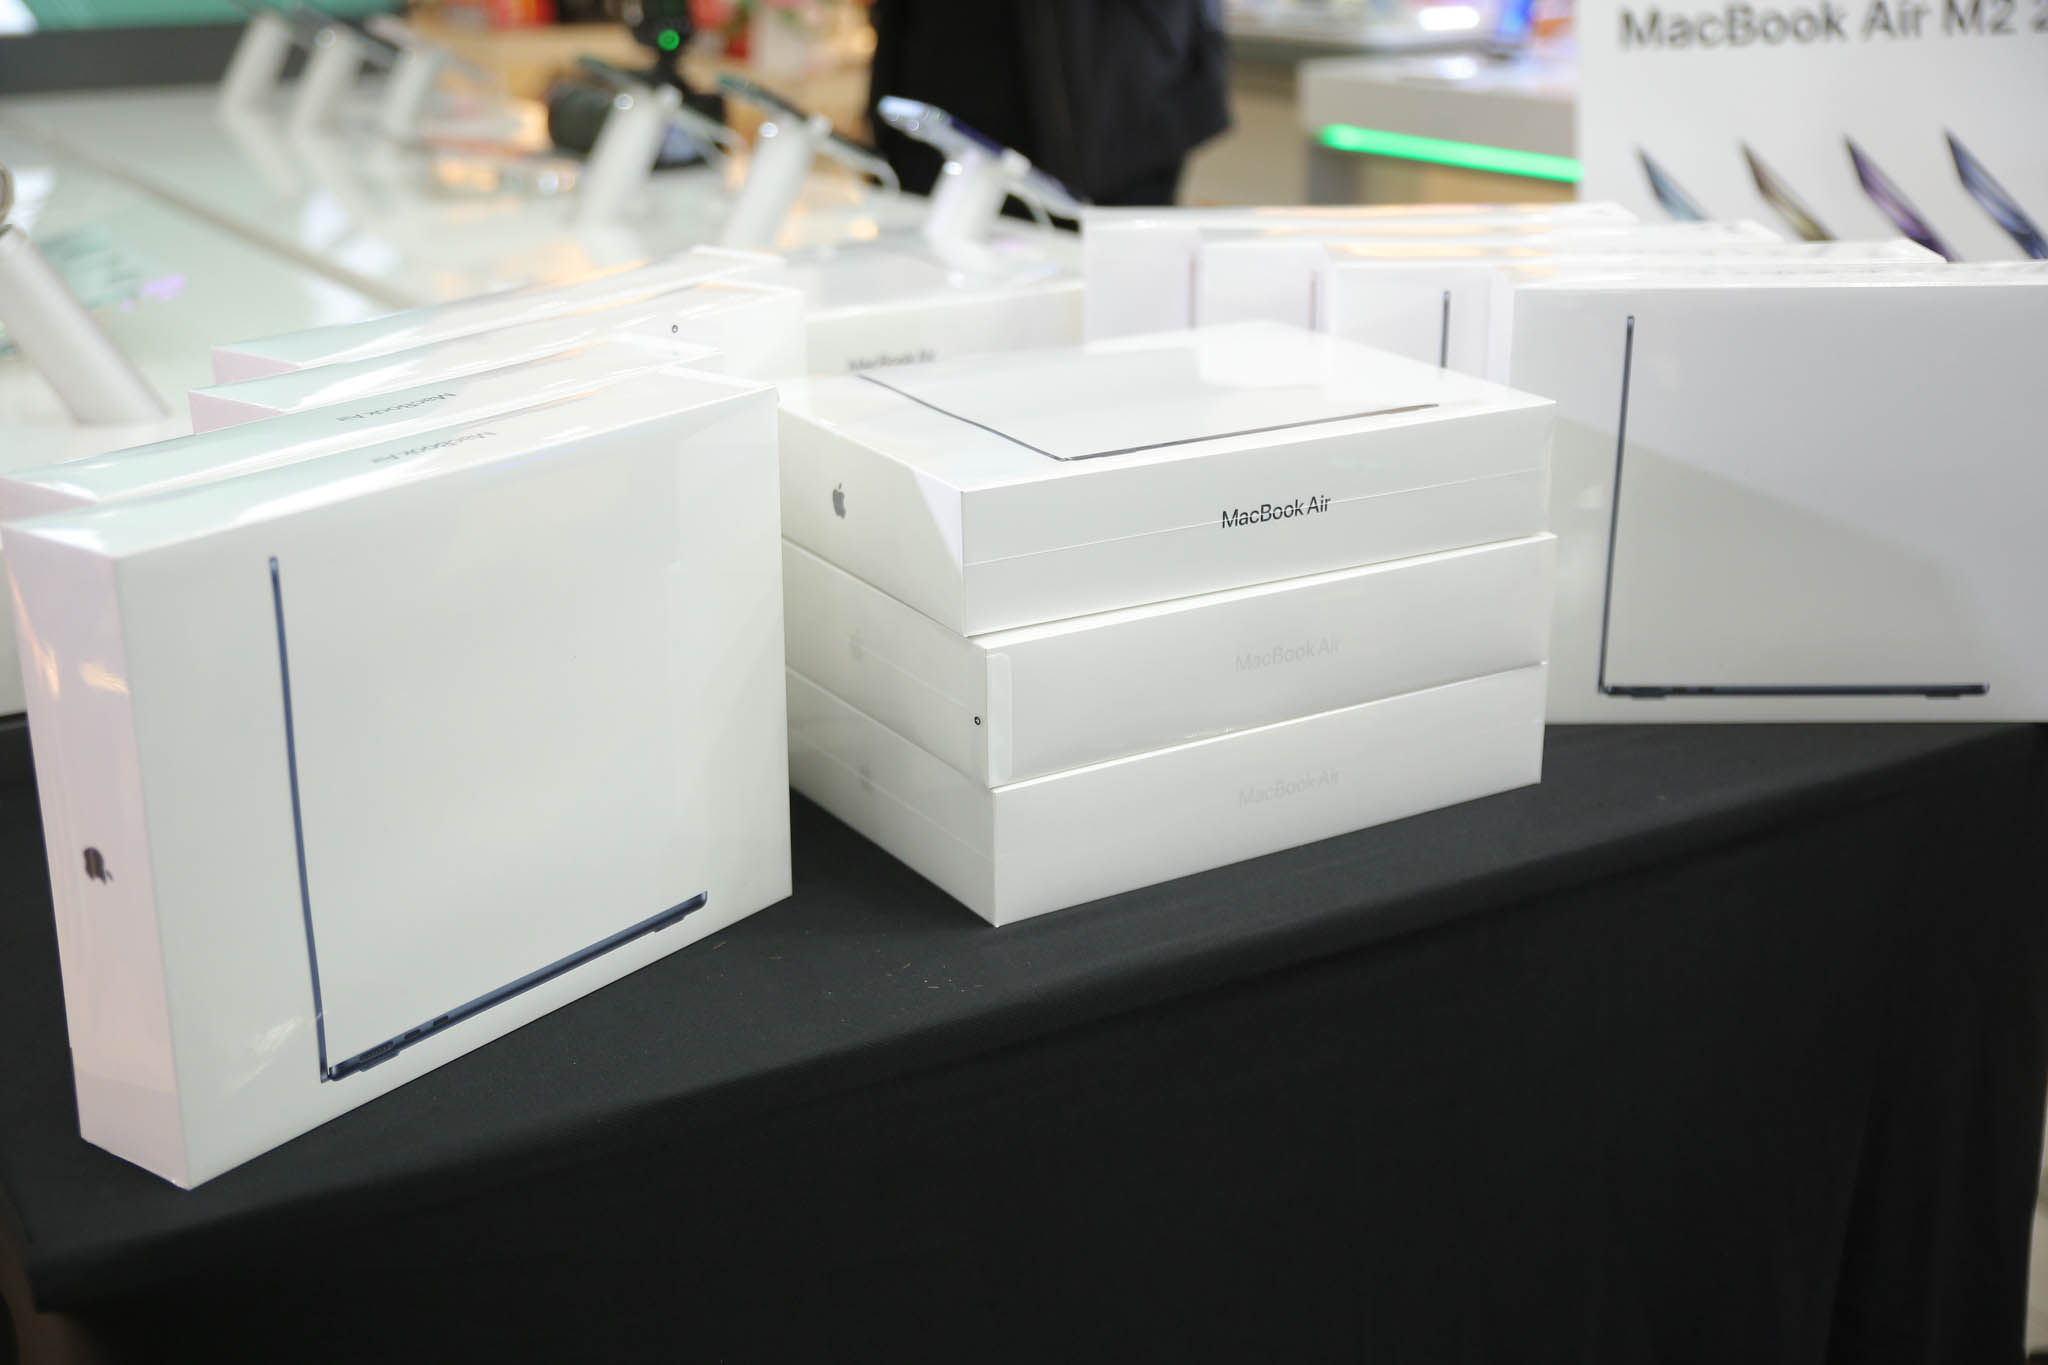 FPT Shop mở bán sớm MacBook Air M2 với nhiều quà tặng giá trị